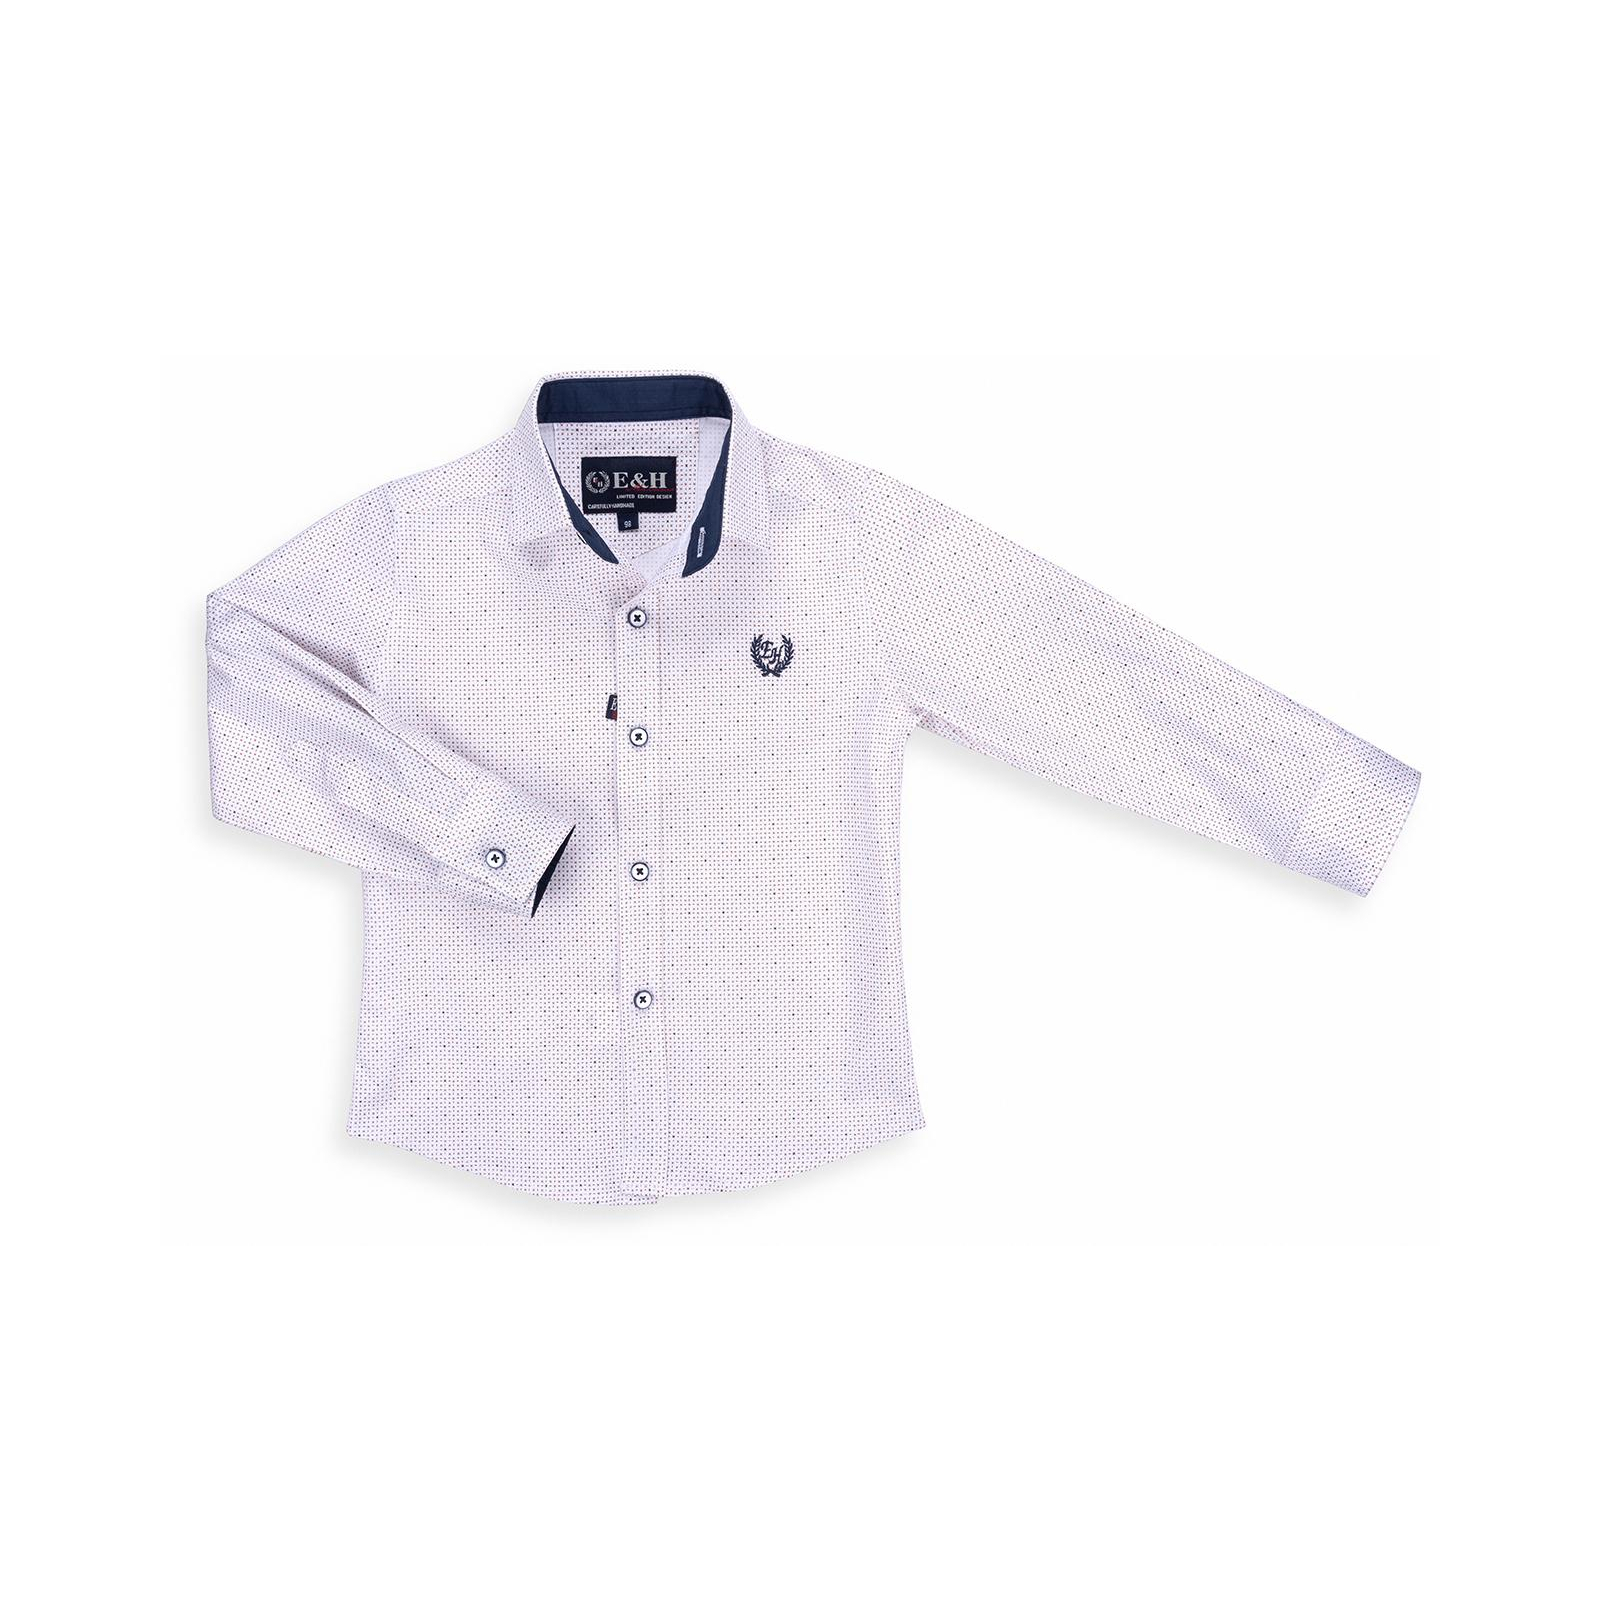 Рубашка E&H с мелким рисунком (G-257-110B-beige)